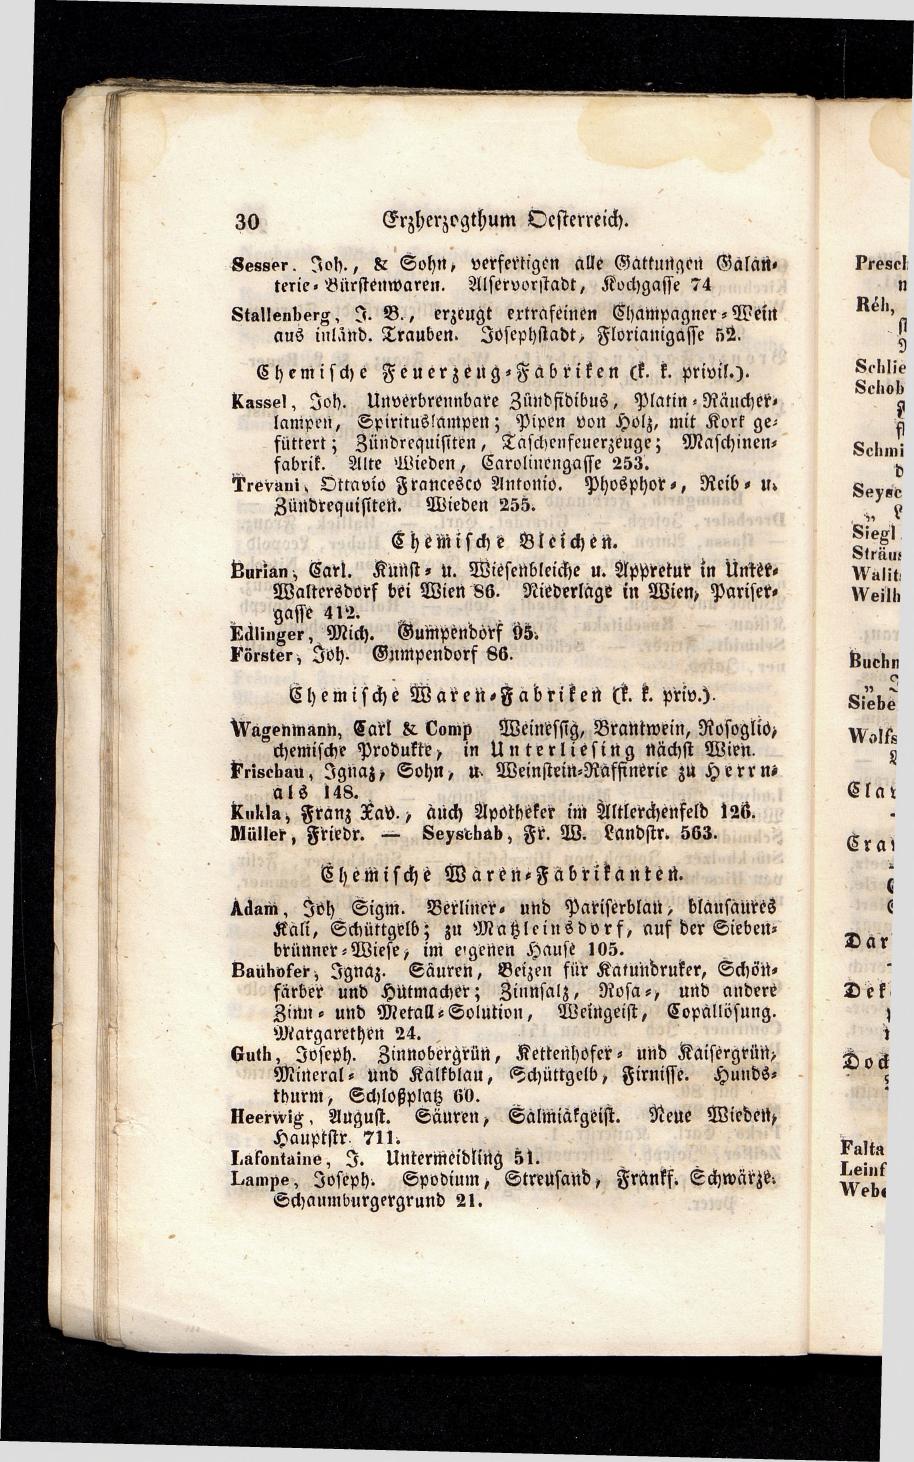 Grosses Adressbuch der Kaufleute. No. 13. Oesterreich ober u. unter der Enns 1844 - Seite 34